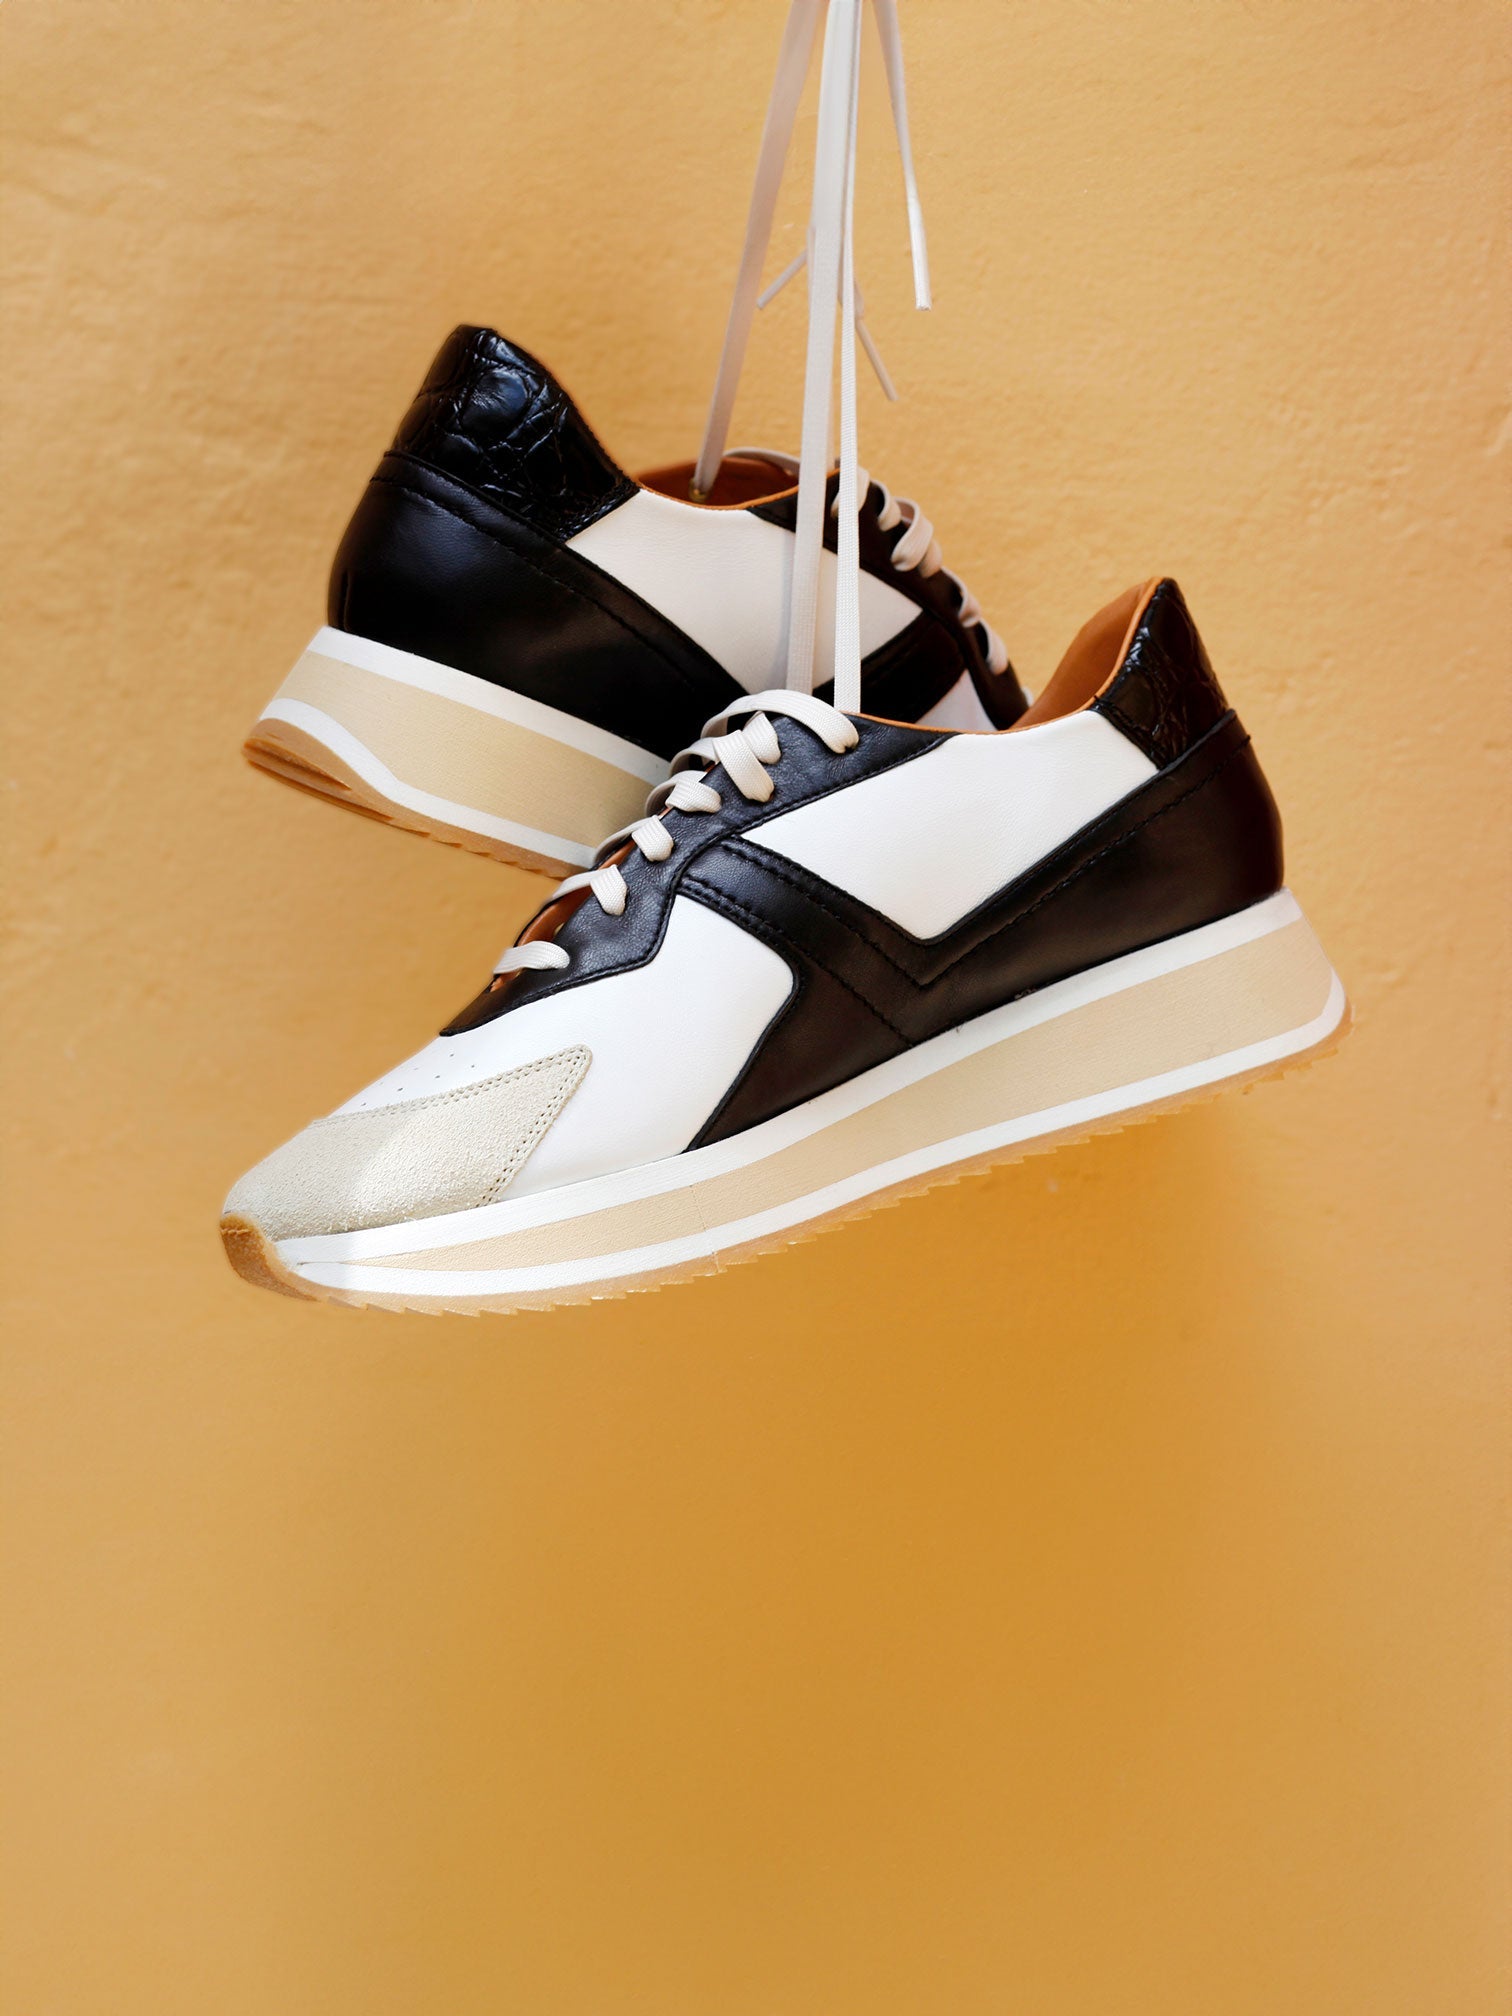 SNEAKERS - ORVIL sneakers, black, white and beige croco - 3606063637961 - Clergerie Paris - Europe